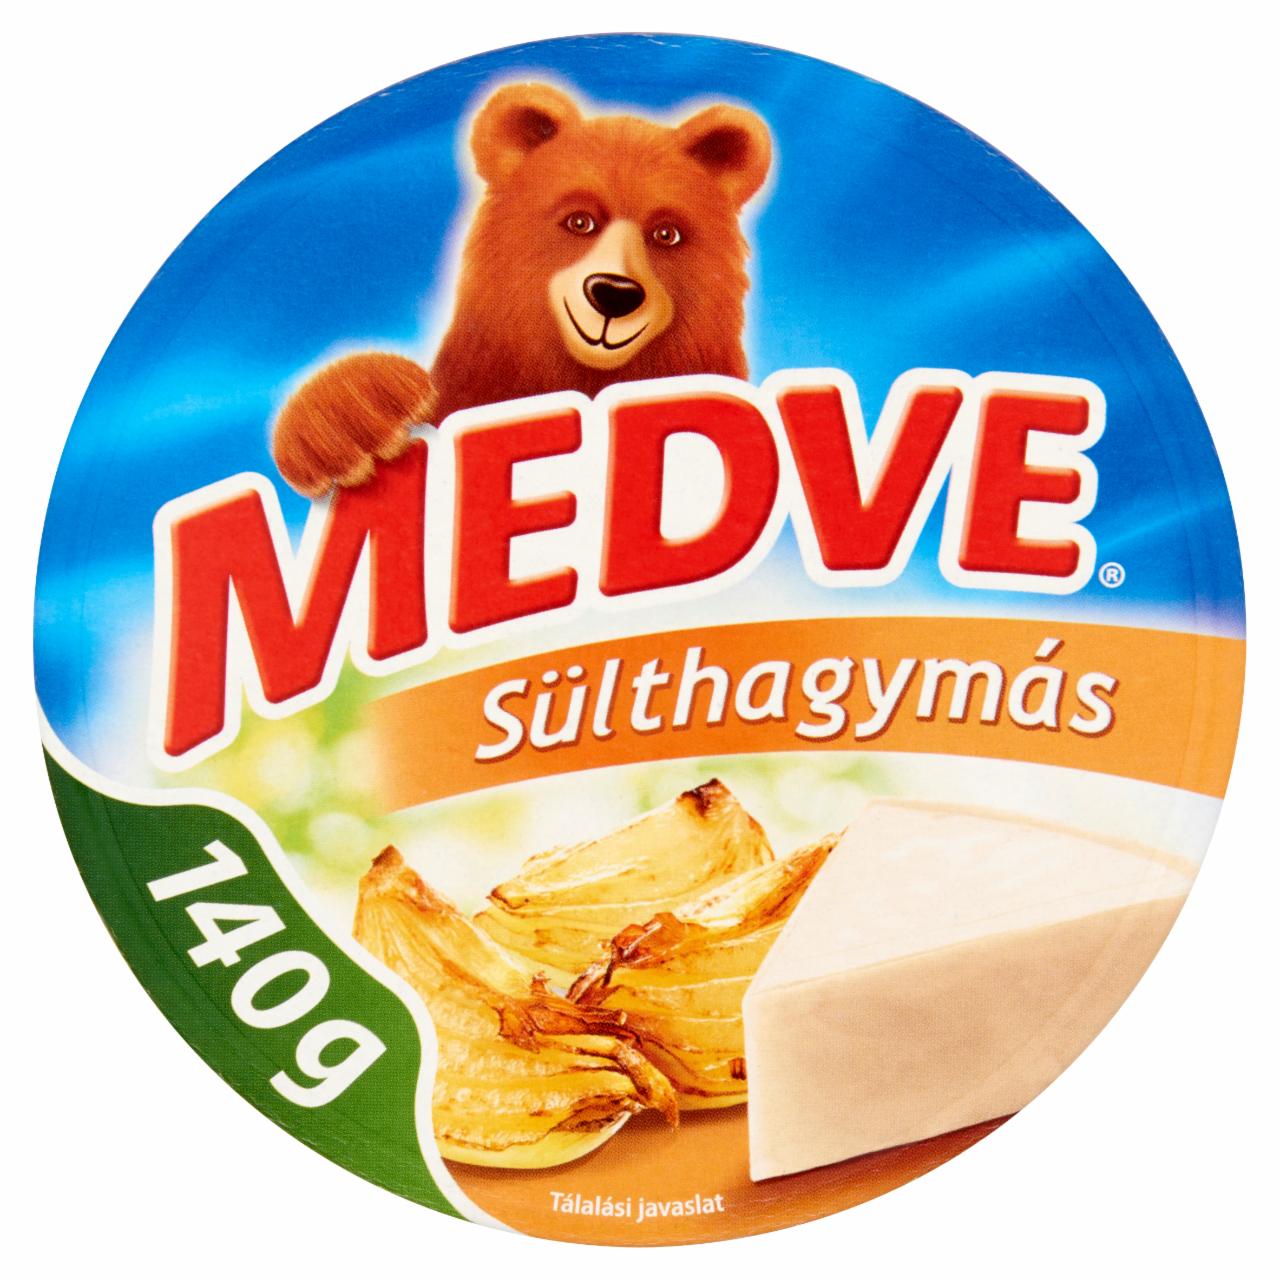 Képek - Medve sülthagymás kenhető, félzsíros ömlesztett sajt 8 x 17,5 g (140 g)